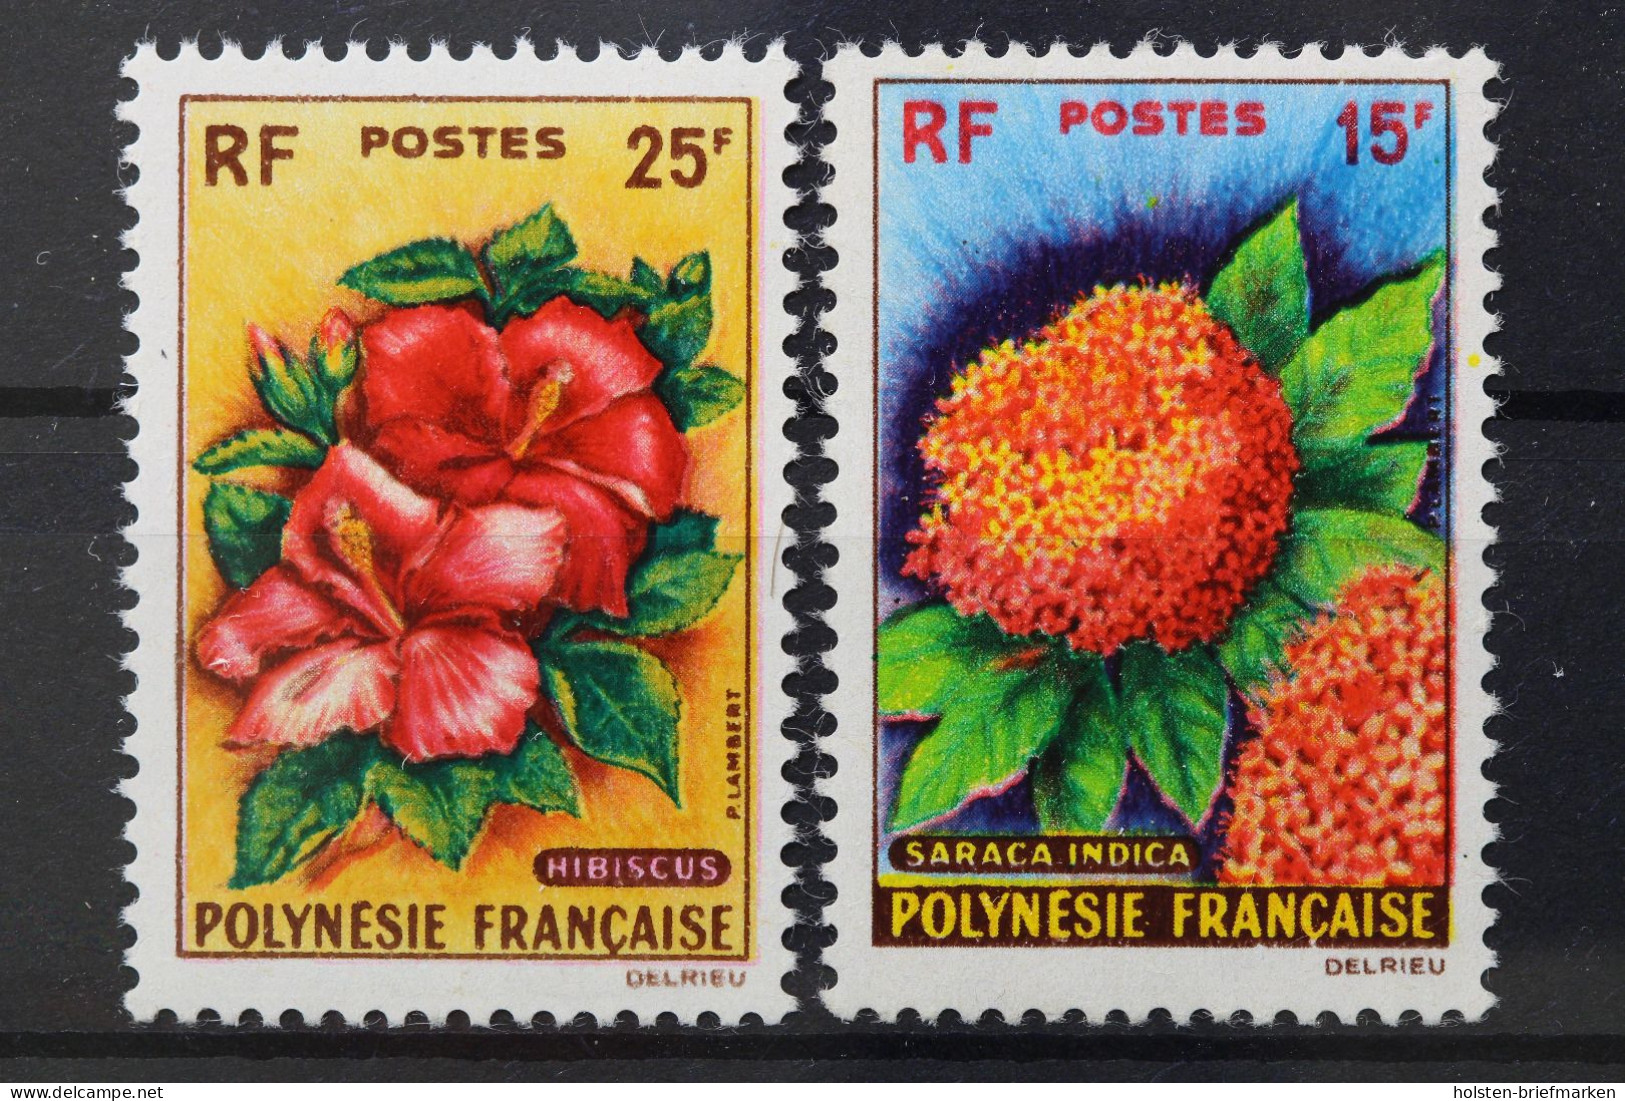 Französisch-Polynesien, MiNr. 20-21, Postfrisch - Unused Stamps